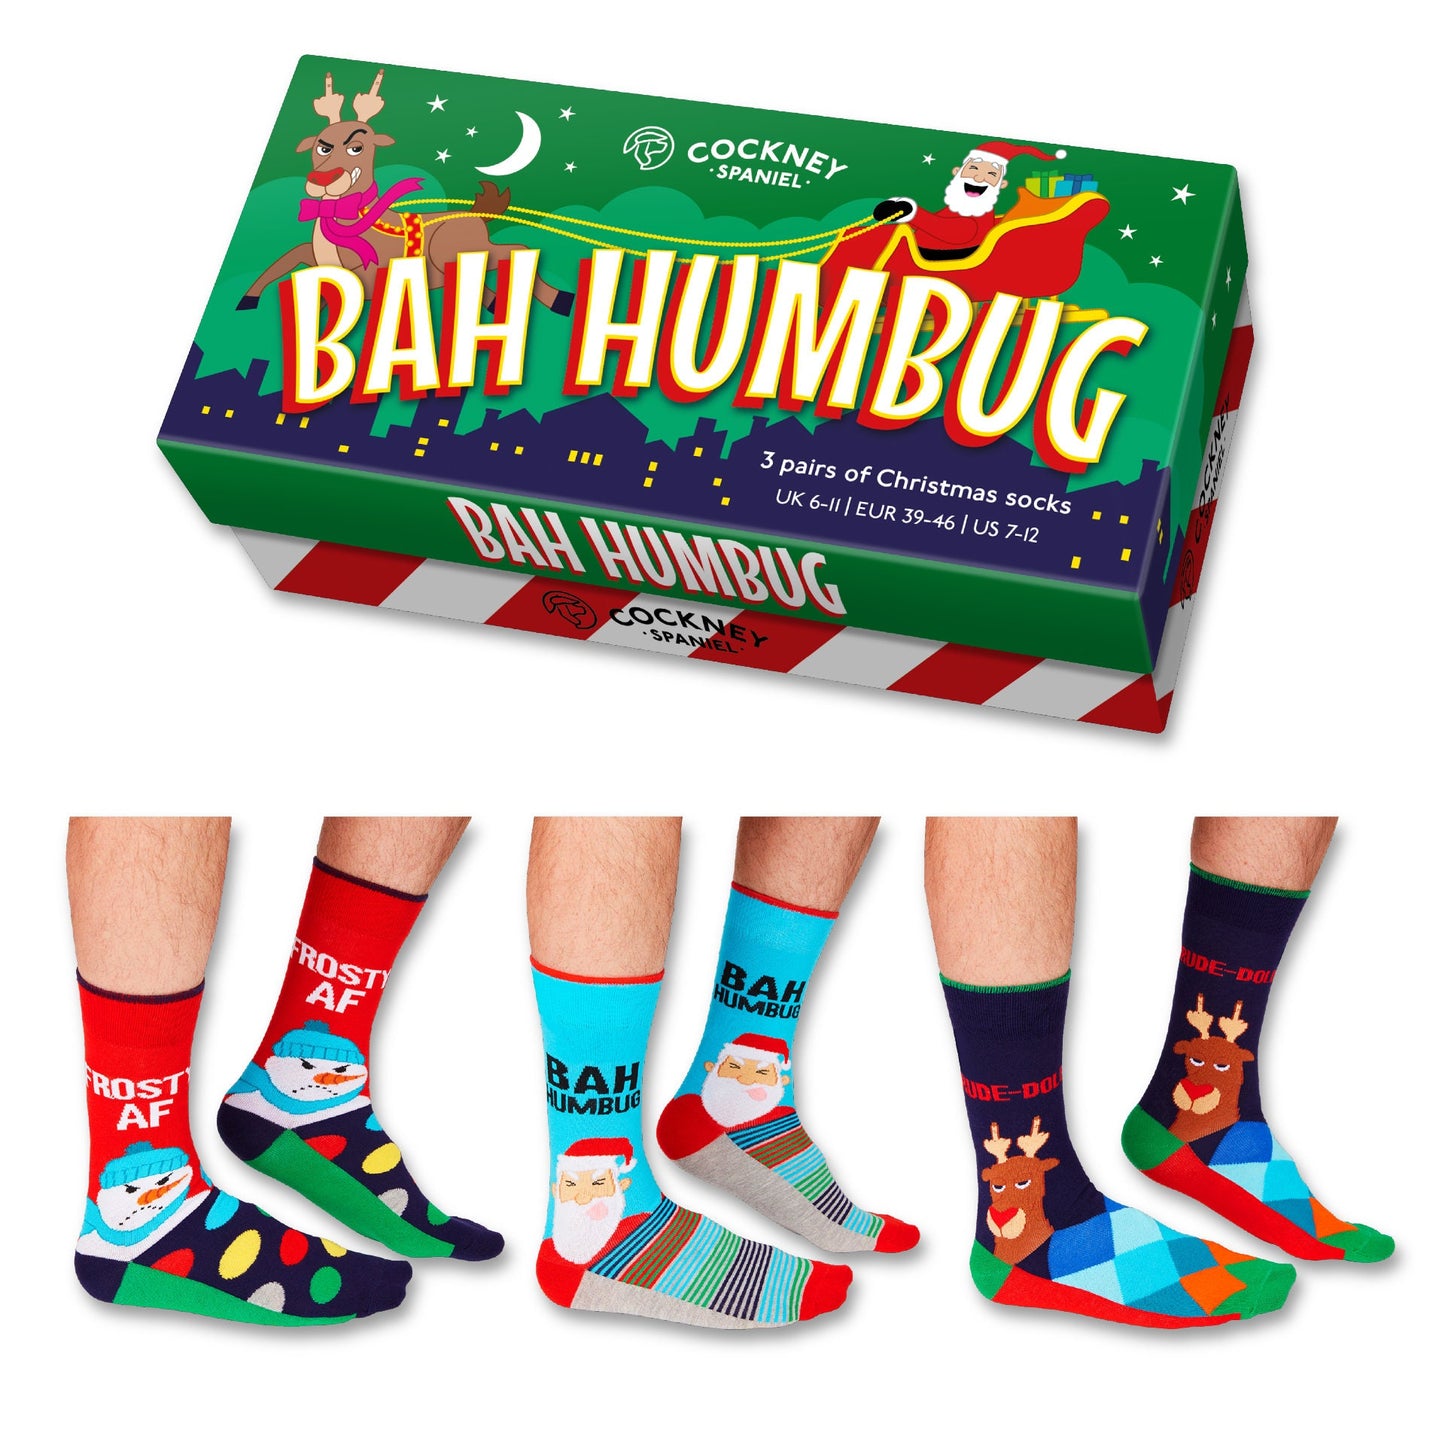 Bah Humbug Christmas Sock Gift Box